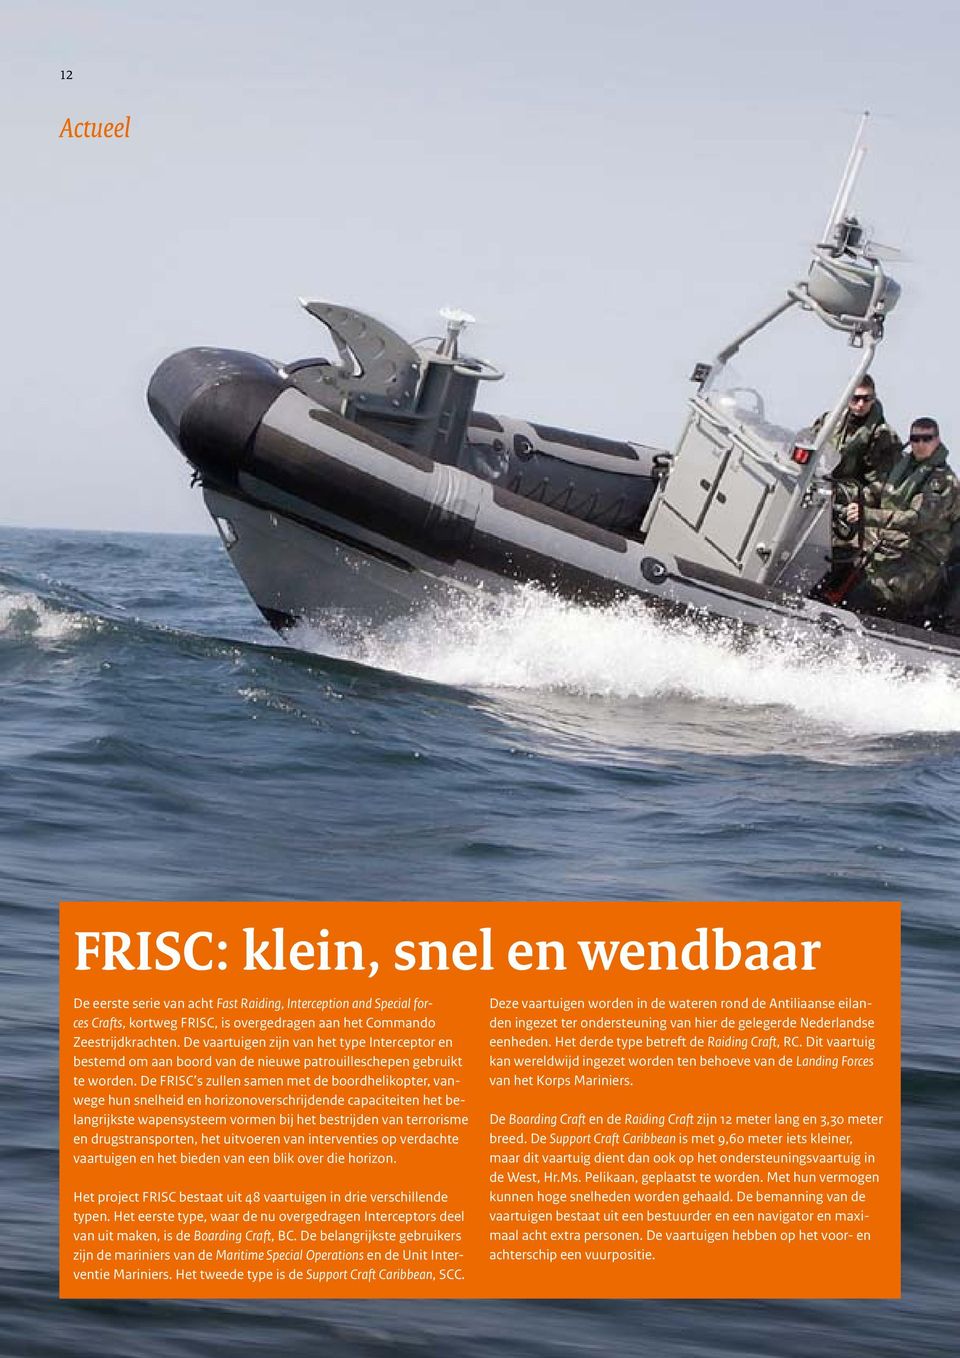 De FRISC s zullen samen met de boordhelikopter, vanwege hun snelheid en horizonoverschrijdende capaciteiten het belangrijkste wapensysteem vormen bij het bestrijden van terrorisme en